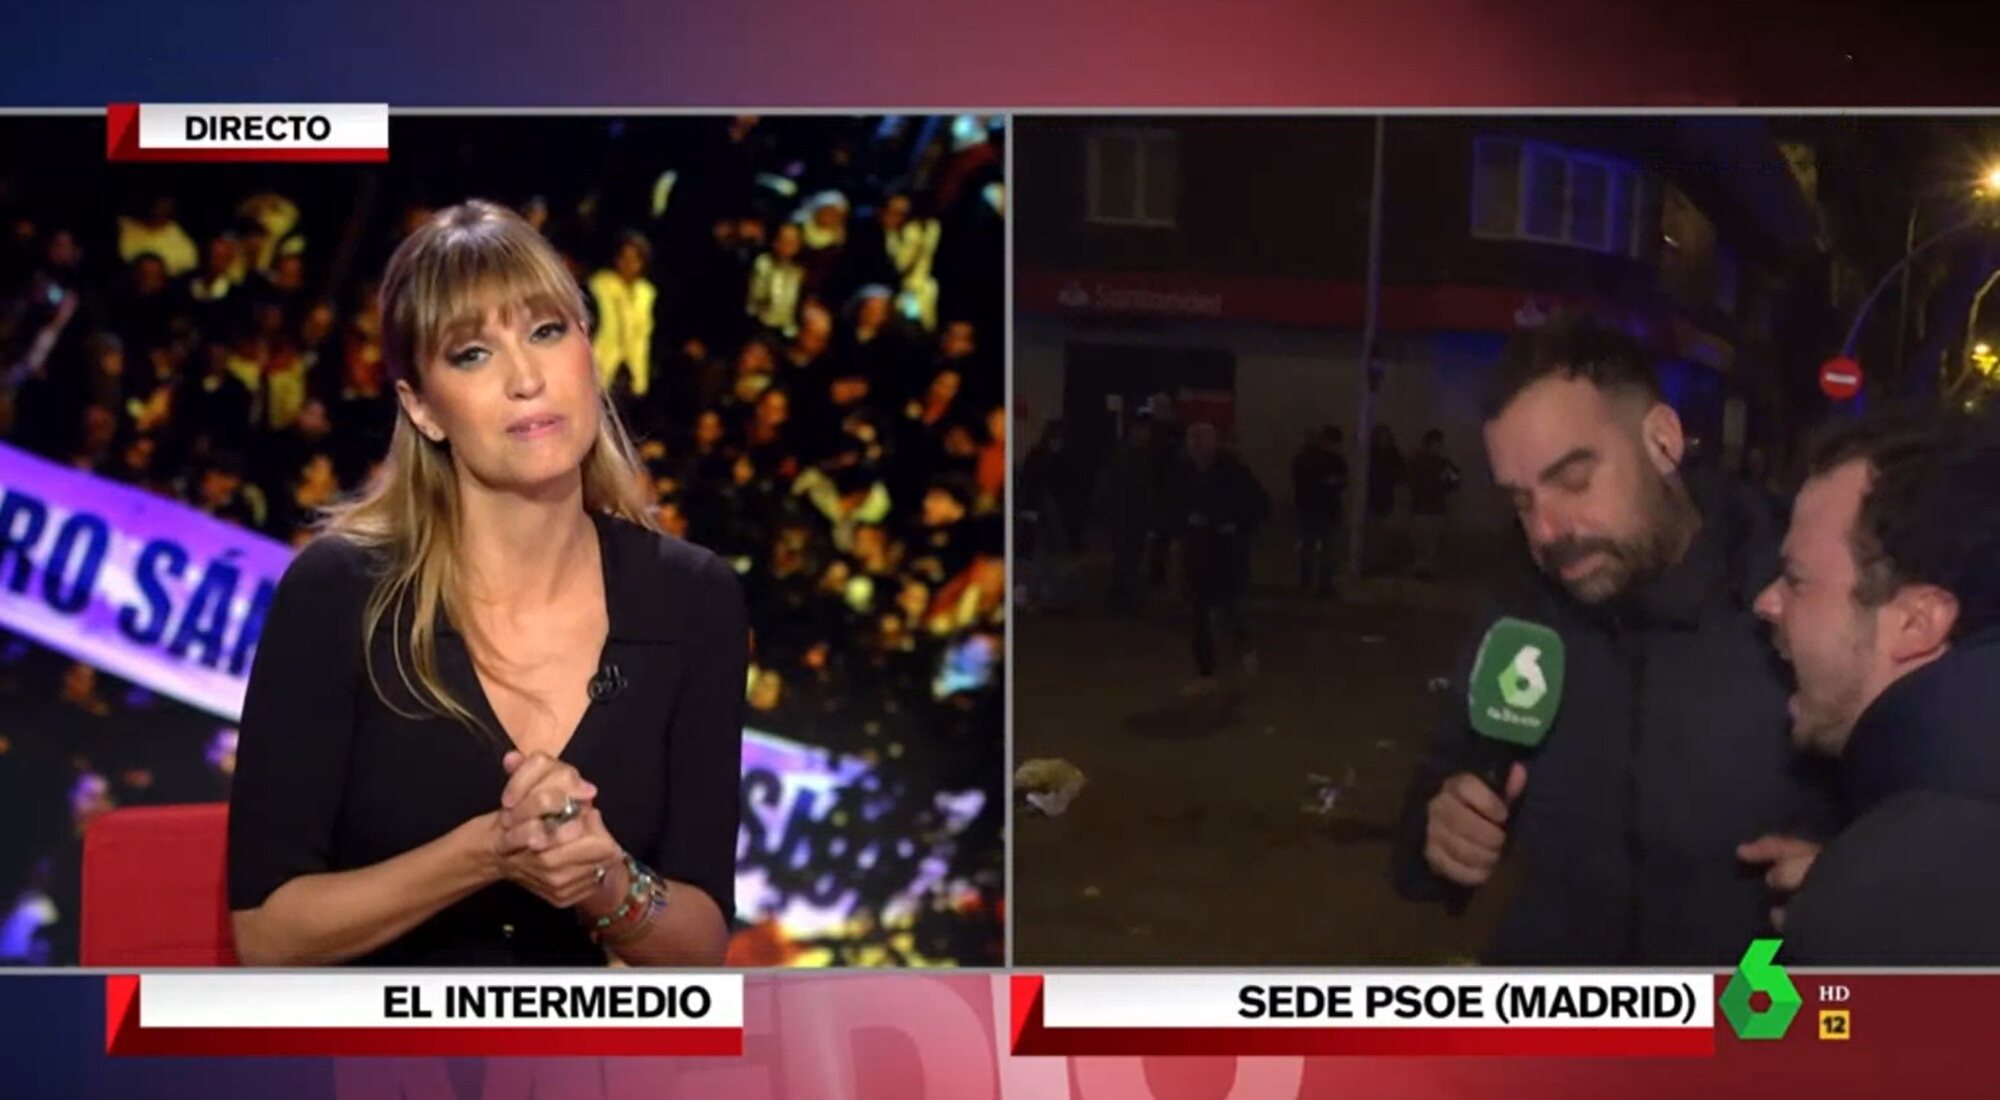 Sandra Sabatés presencia el acoso a Javier Bastida en directo en 'El intermedio'